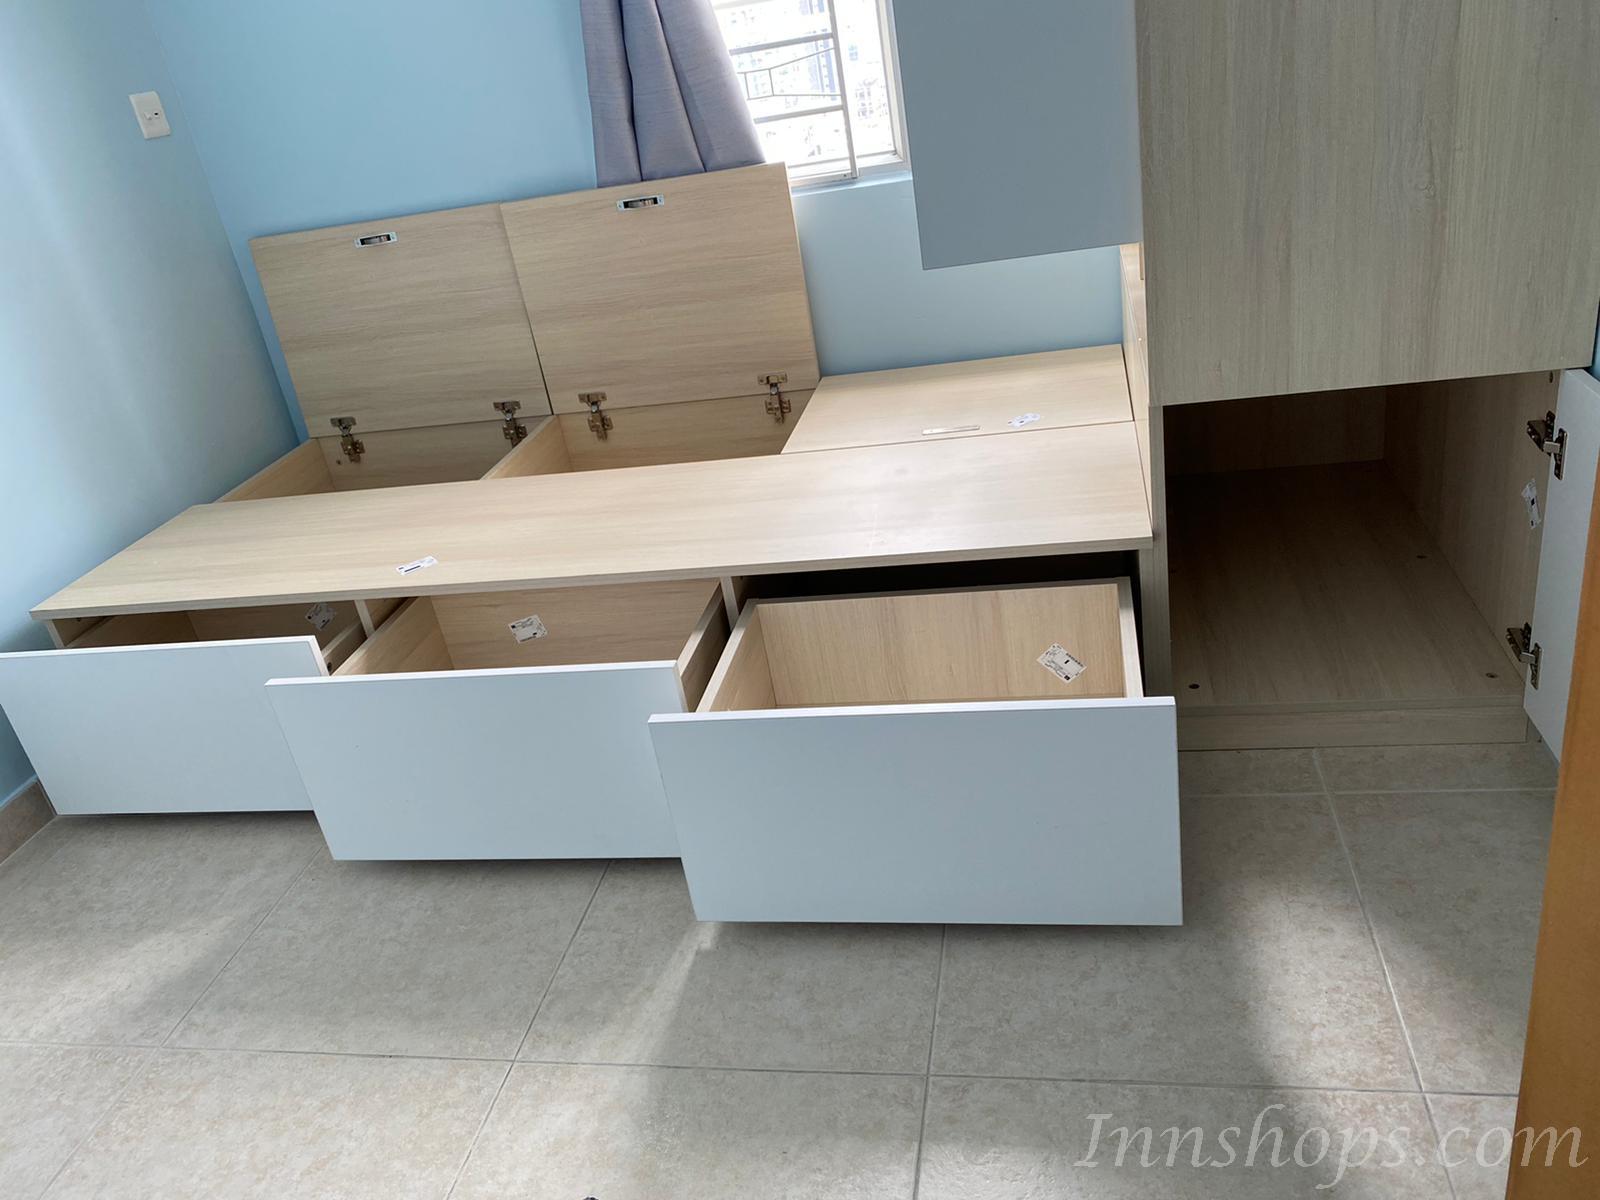 訂造 多功能組合床 衣櫃床+3櫃桶 *可自訂呎吋(不包床褥)(IS7250)